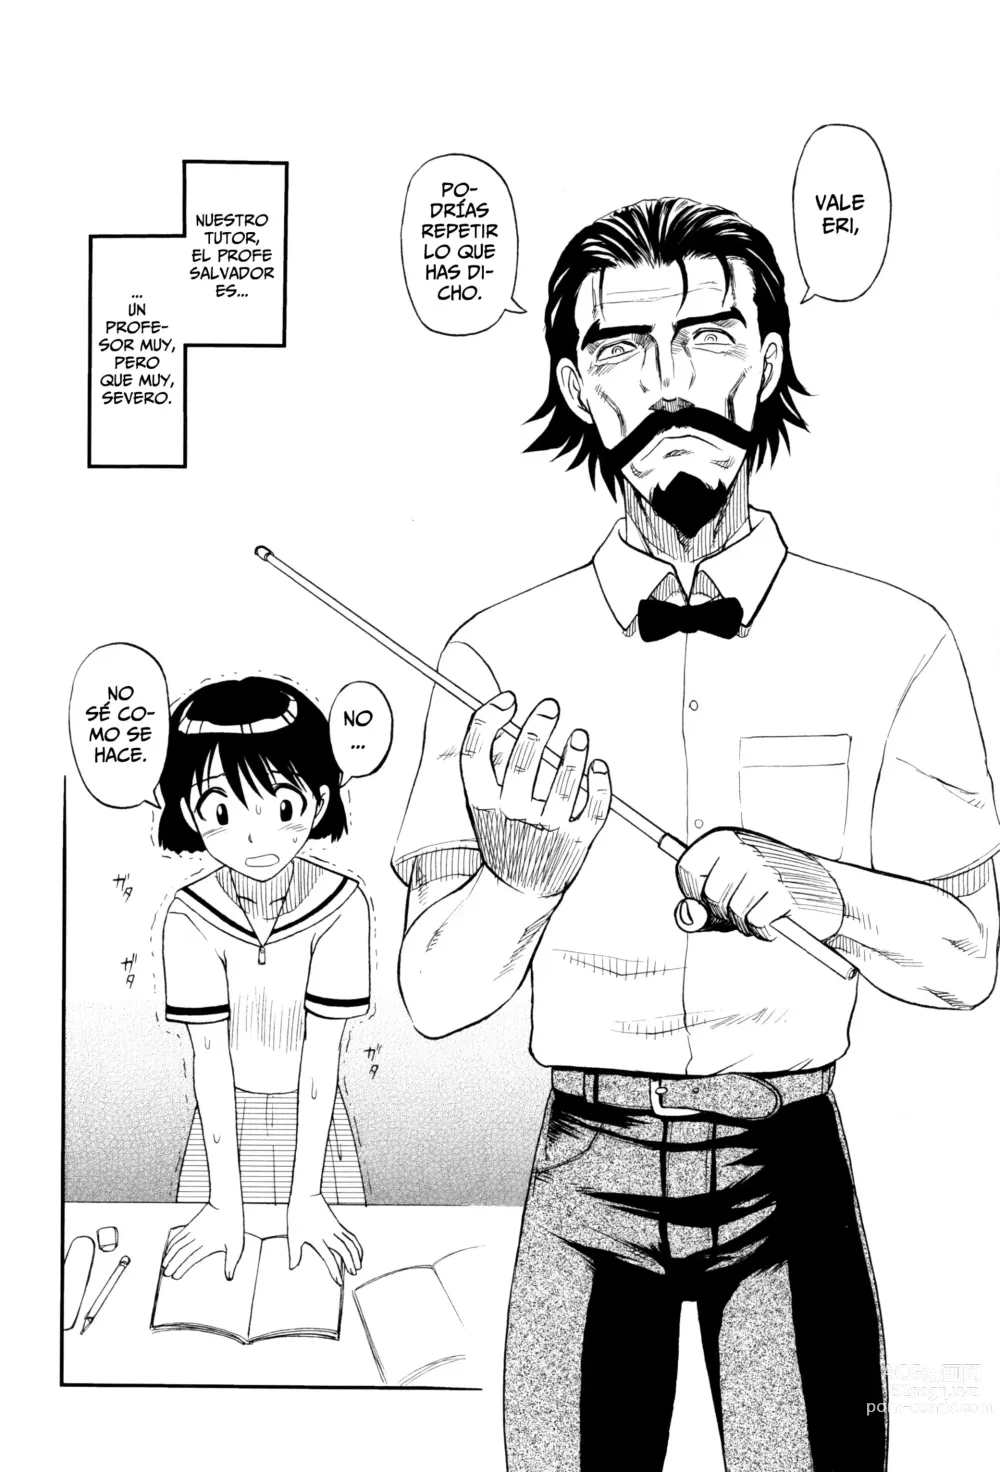 Page 2 of manga El Profesor Salvador Dice Que La Letra Con Sangre Entra